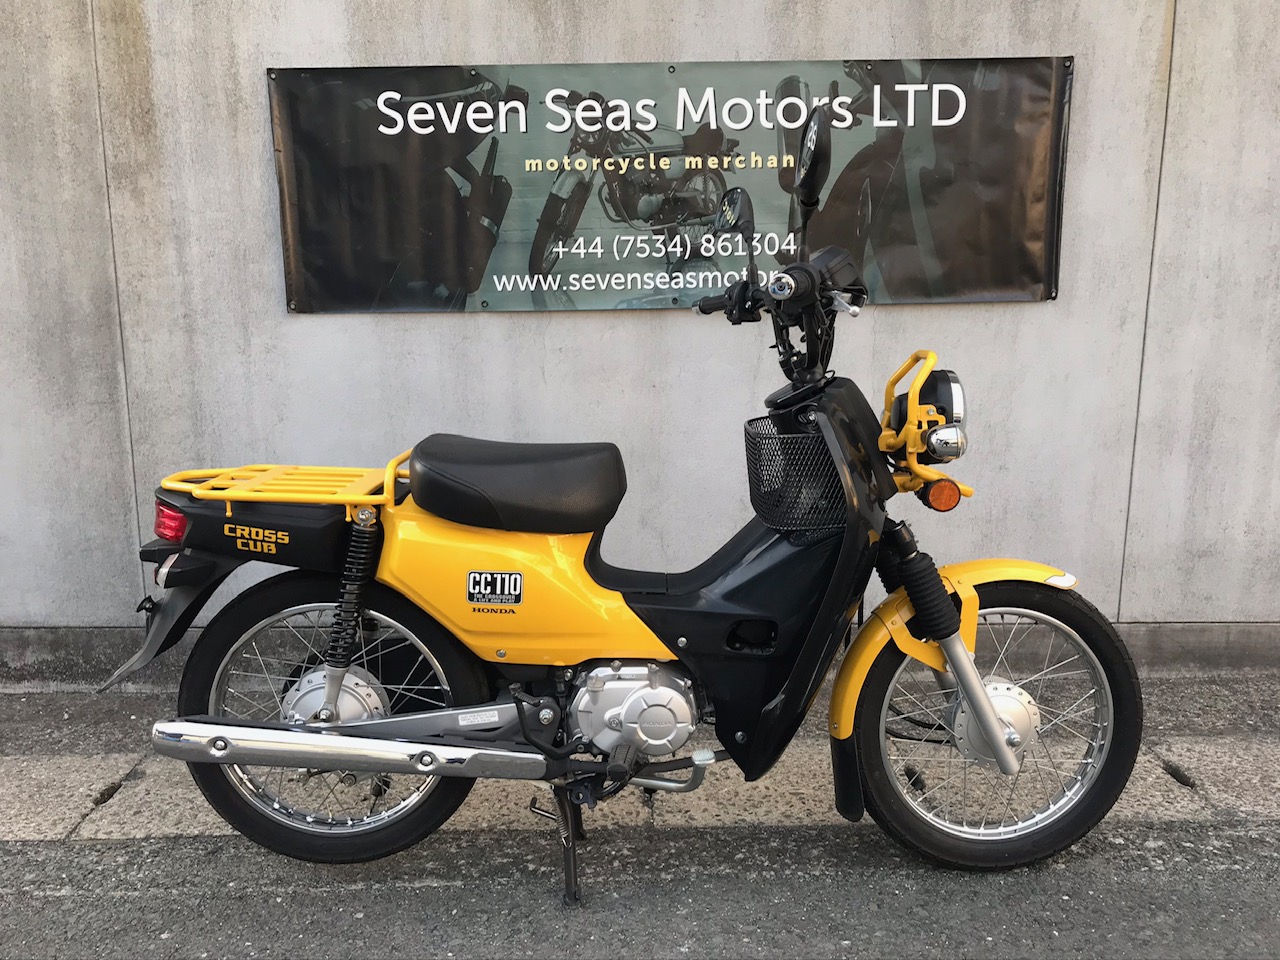 Honda-Cross Cub CC110-Bike | Seven Seas Motors